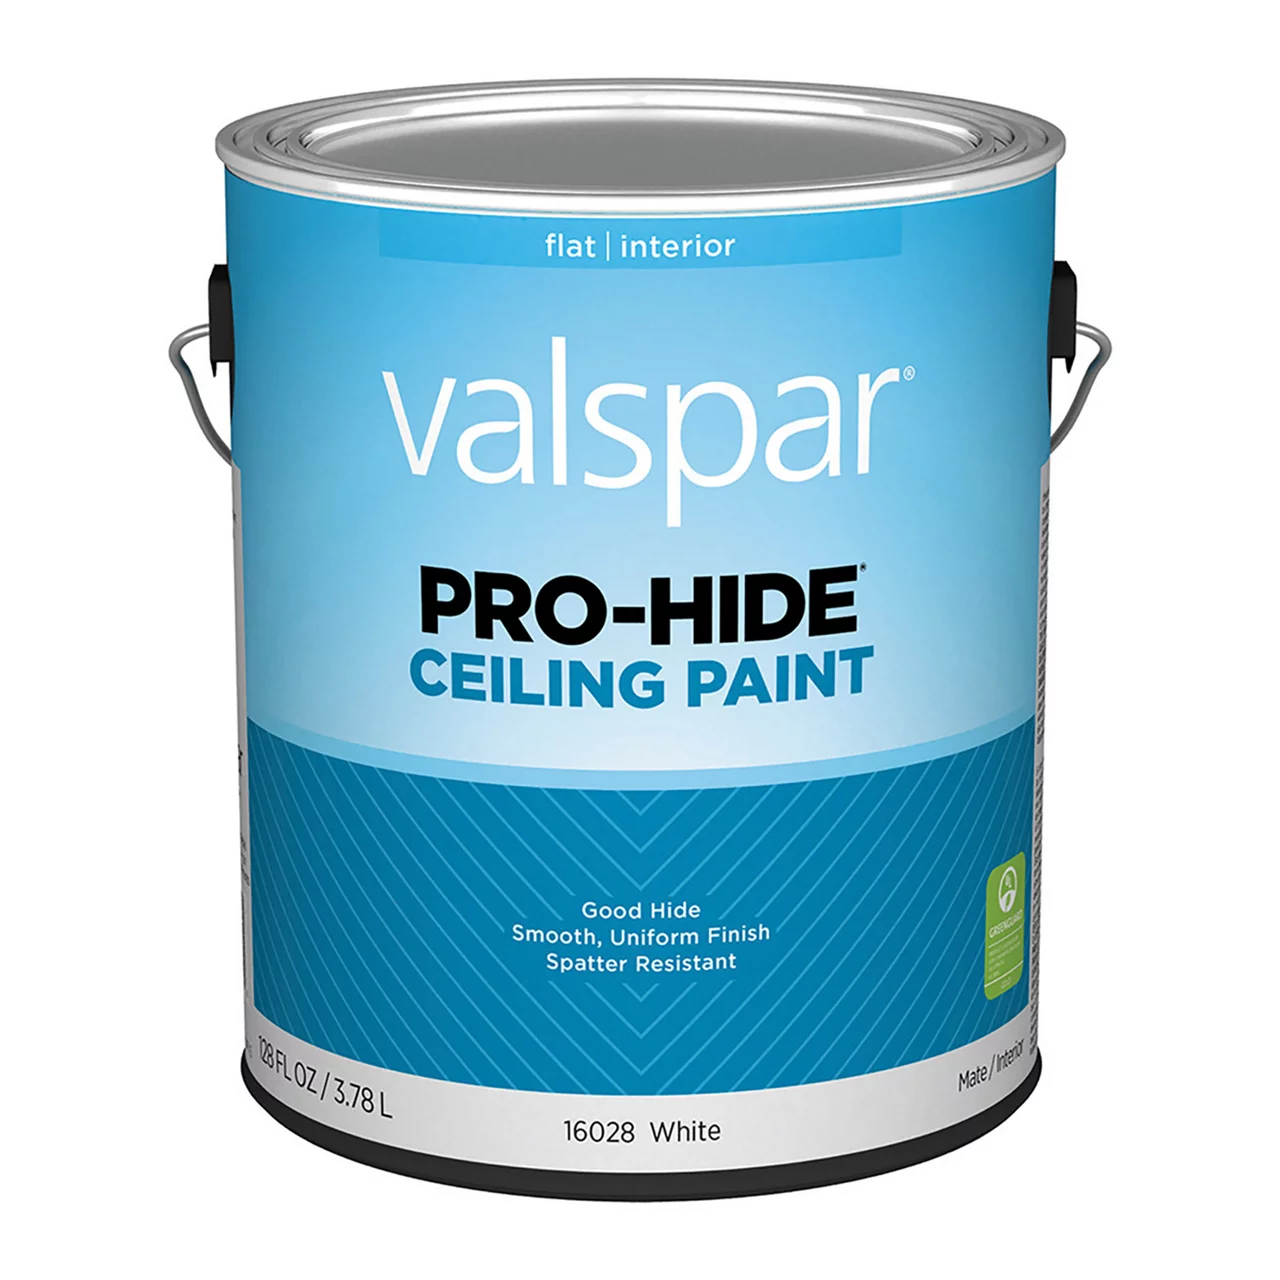 Valspar Pro-Hide Ceiling Paint